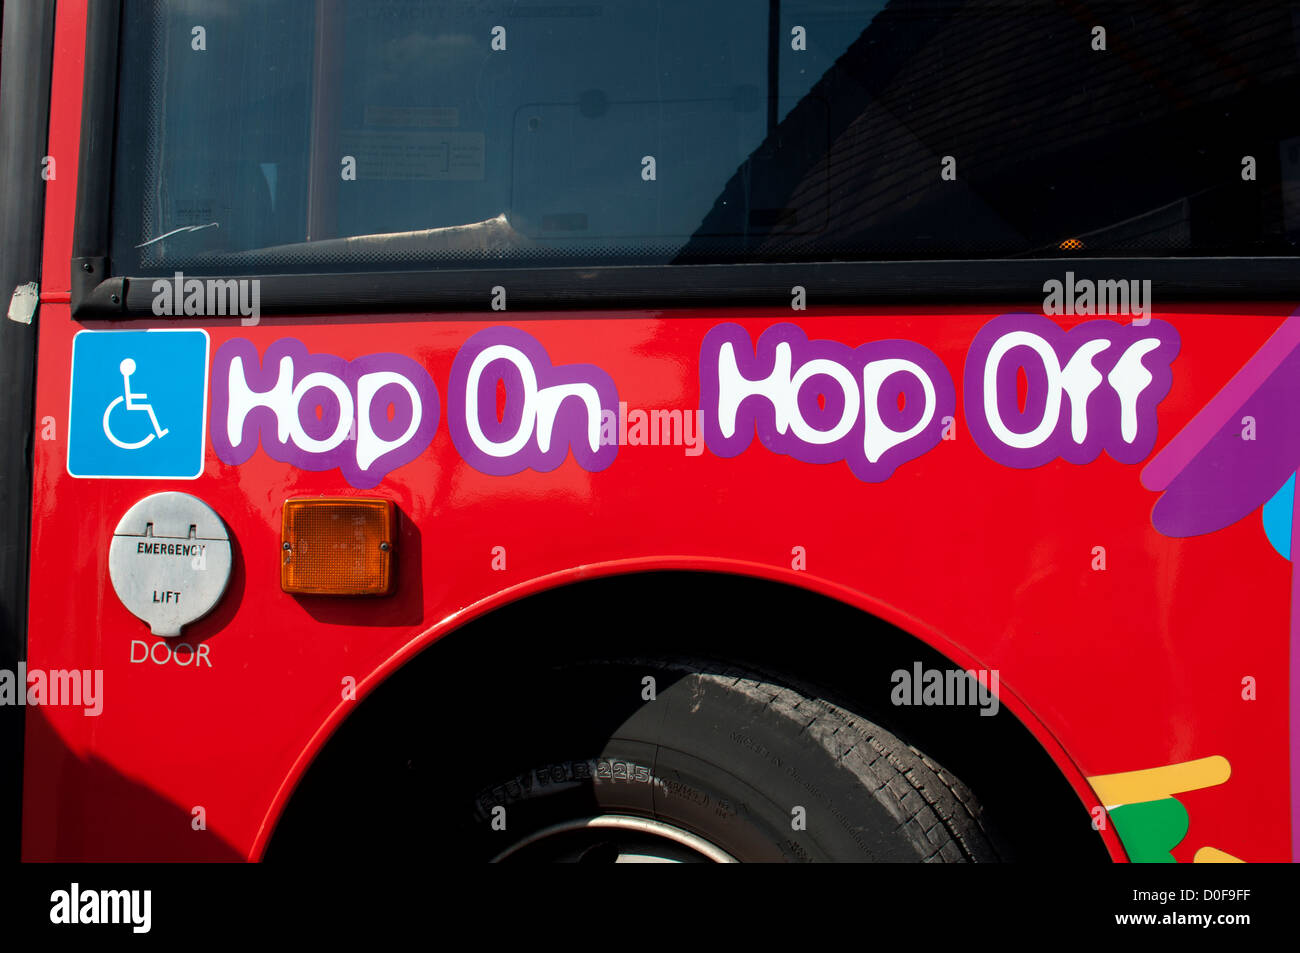 Tour bus, Stratford-upon-Avon, UK Stock Photo